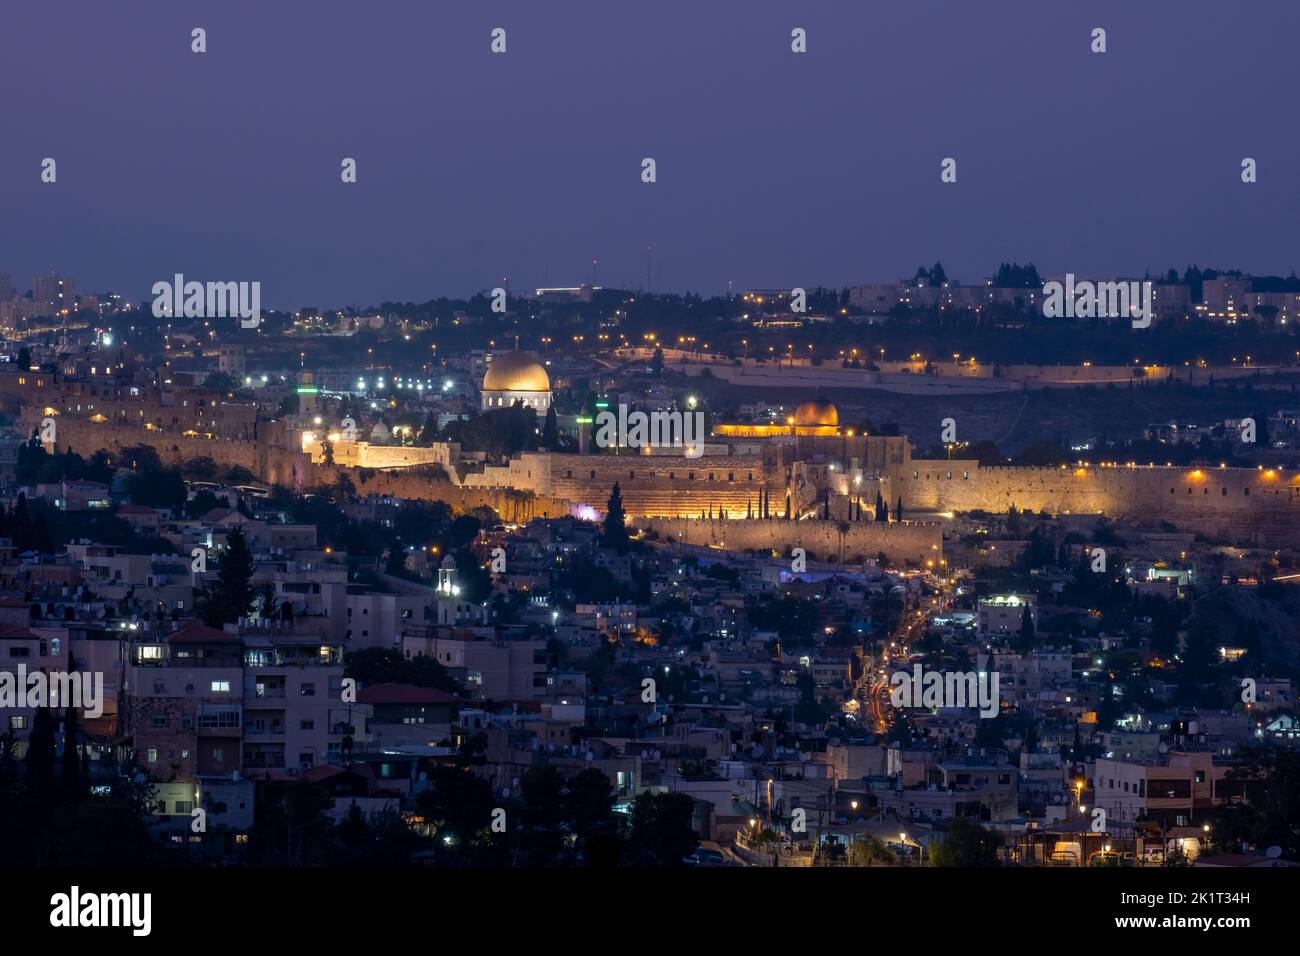 Vue au crépuscule du Dôme du Rocher et de la Mosquée Al-Aksa construite au sommet du Mont du Temple, connue sous le nom de la Compounde Al Aqsa ou Haram esh-Sharif dans le quartier palestinien de Silwan, à Jérusalem-est, en Israël Banque D'Images